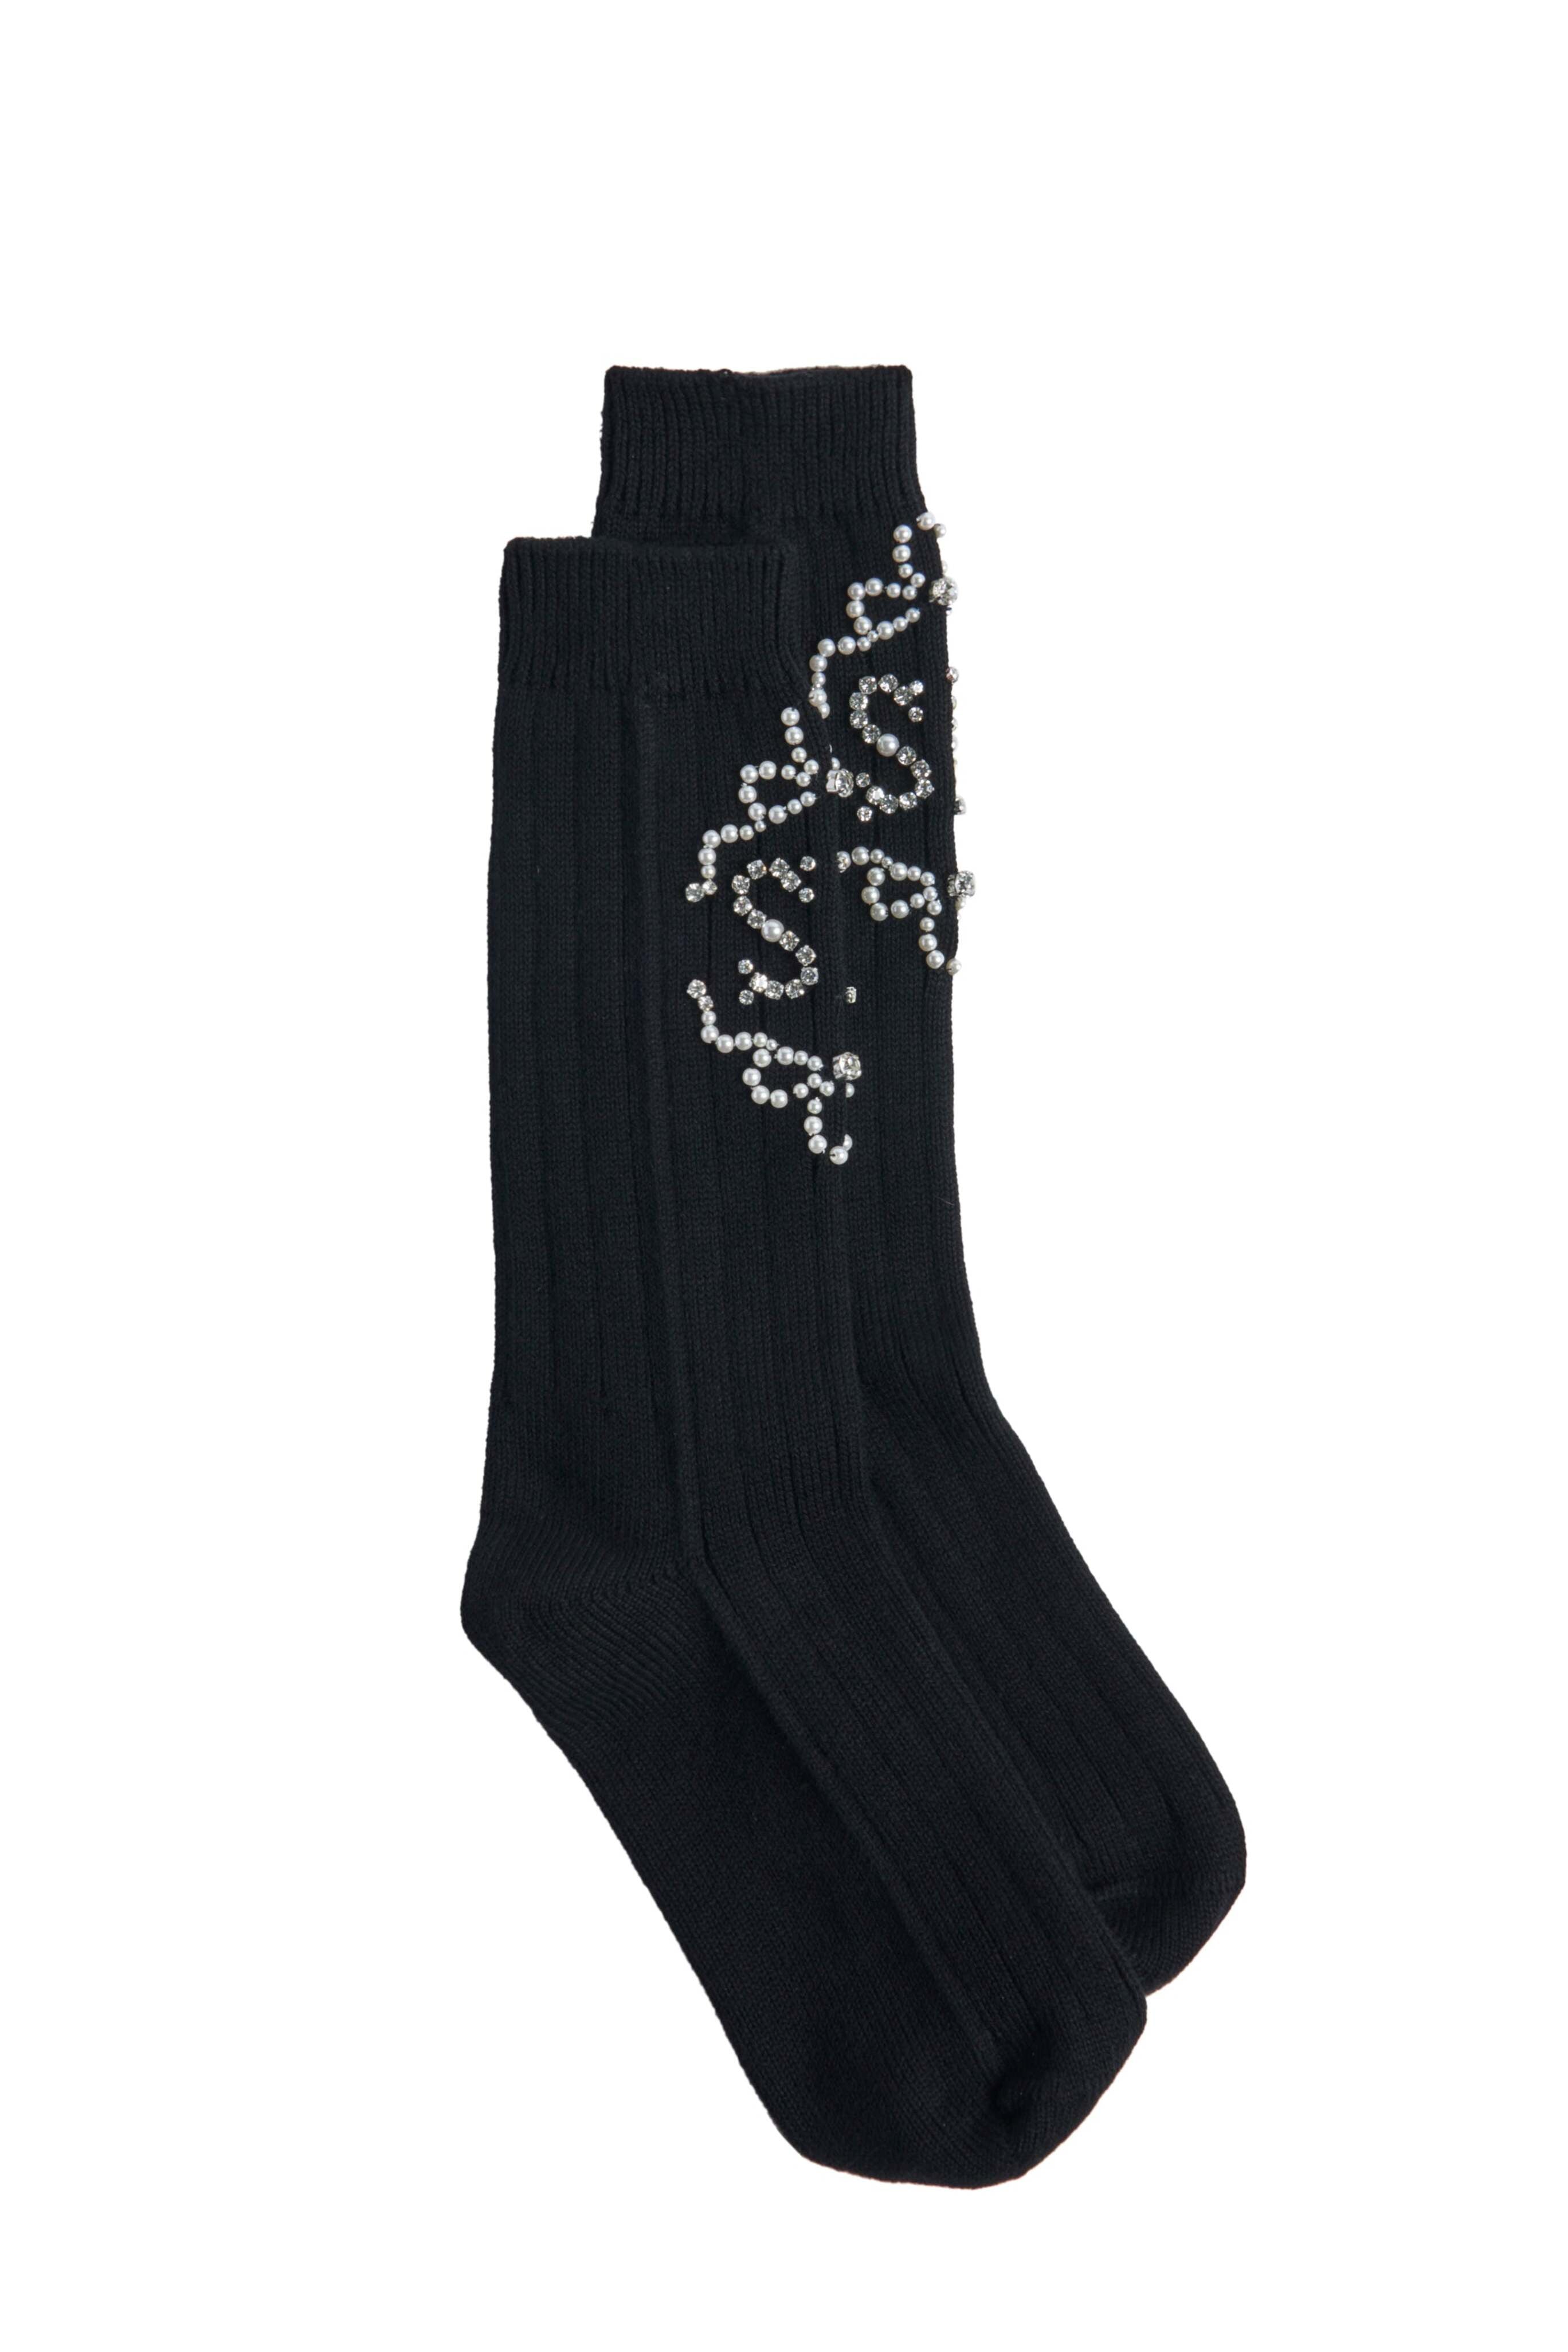 SIMONE ROCHA Ankle Ribbed Socks in Black